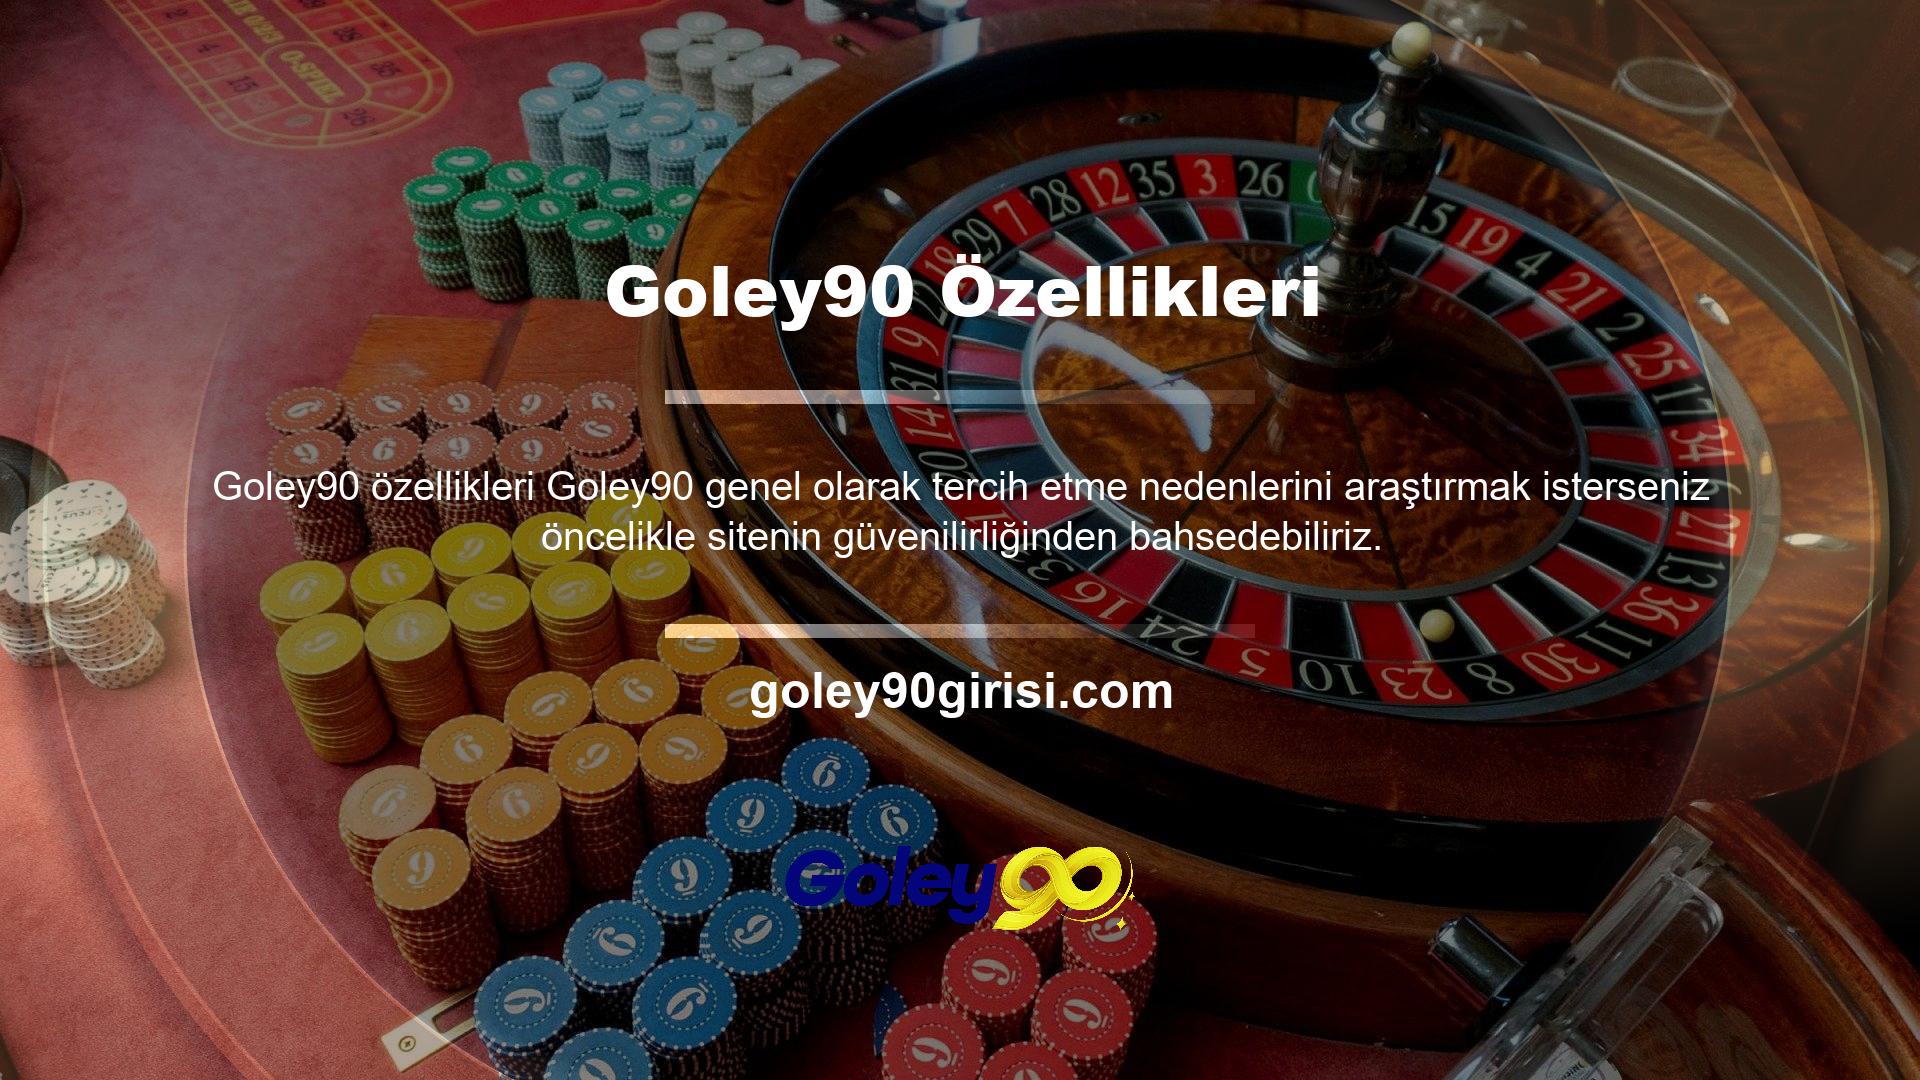 Goley90 güçlü özellikleri nedeniyle titizlikle tavsiye edilen bir web sitesidir